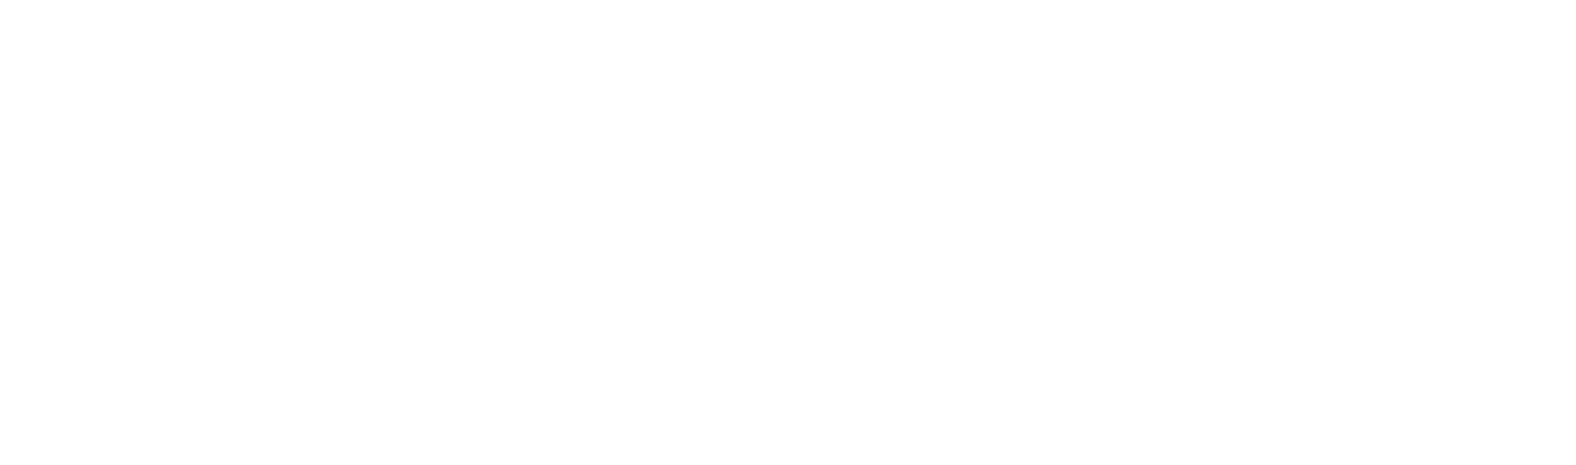 Northern Trust
 logo grand pour les fonds sombres (PNG transparent)